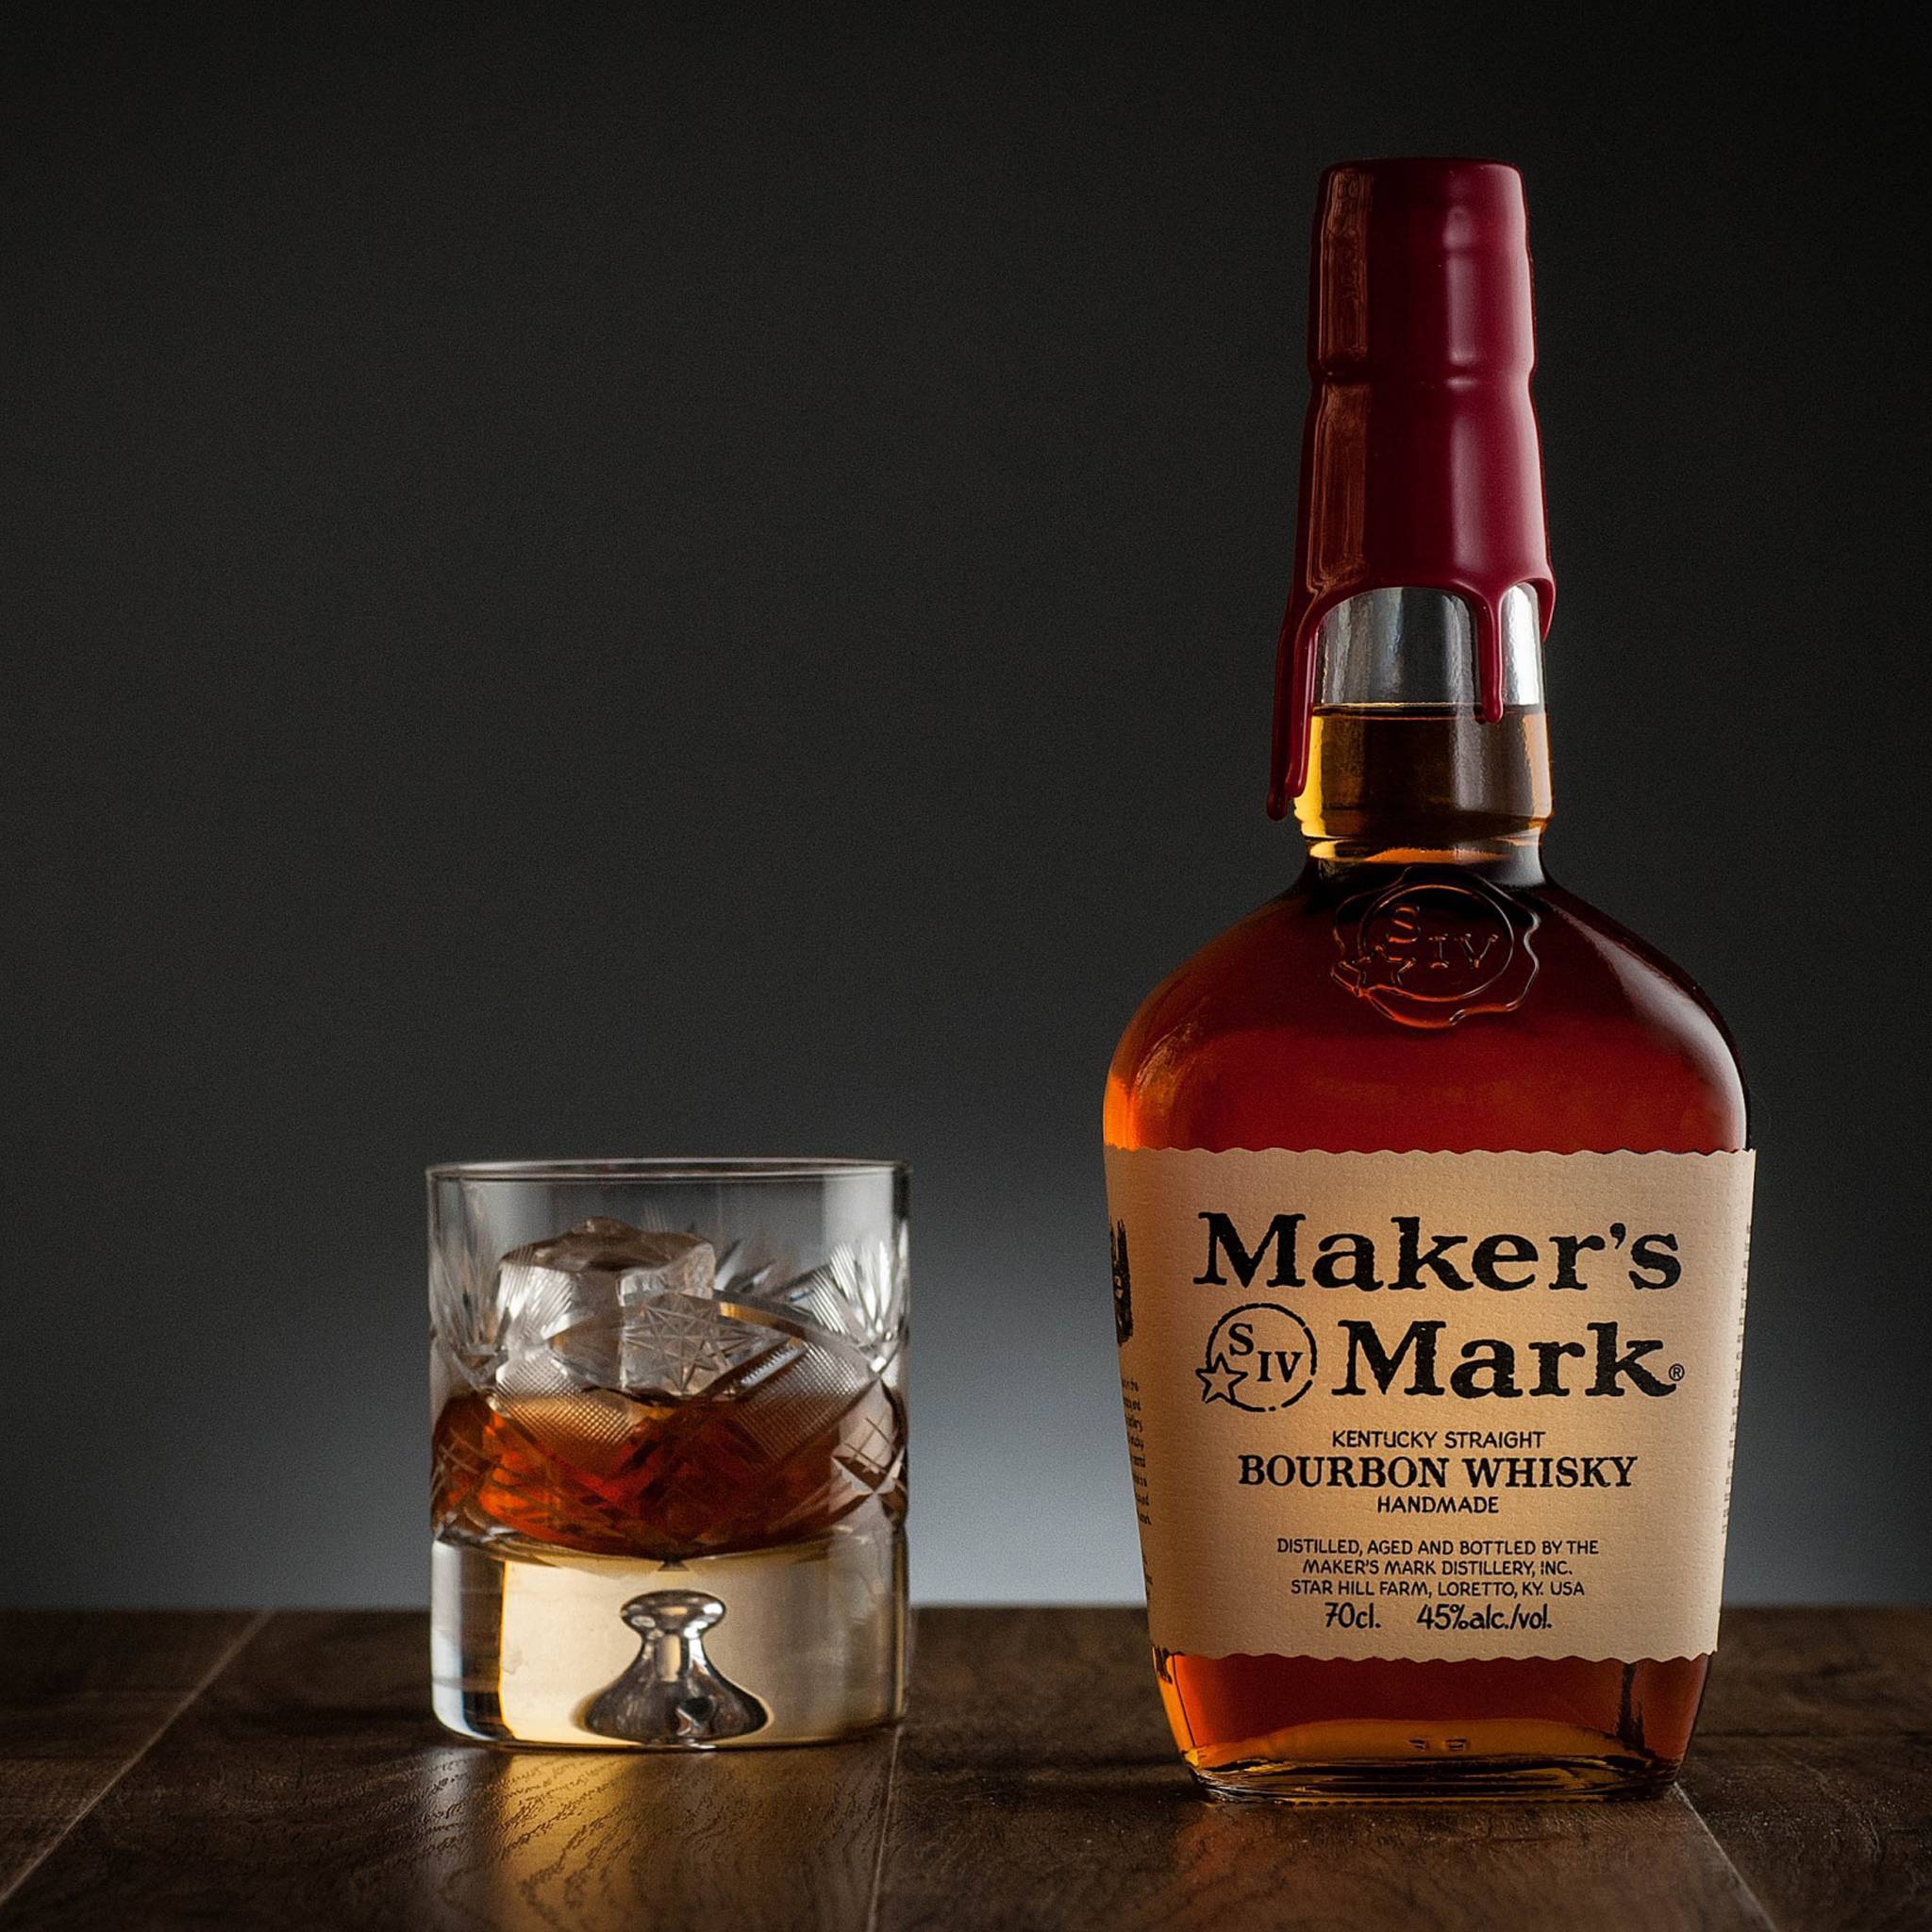 Виски maker's mark (мэйкерс марк): история бренда, вкусовые характеристики напитка, отличительные особенности оформления бутылки - международная платформа для барменов inshaker